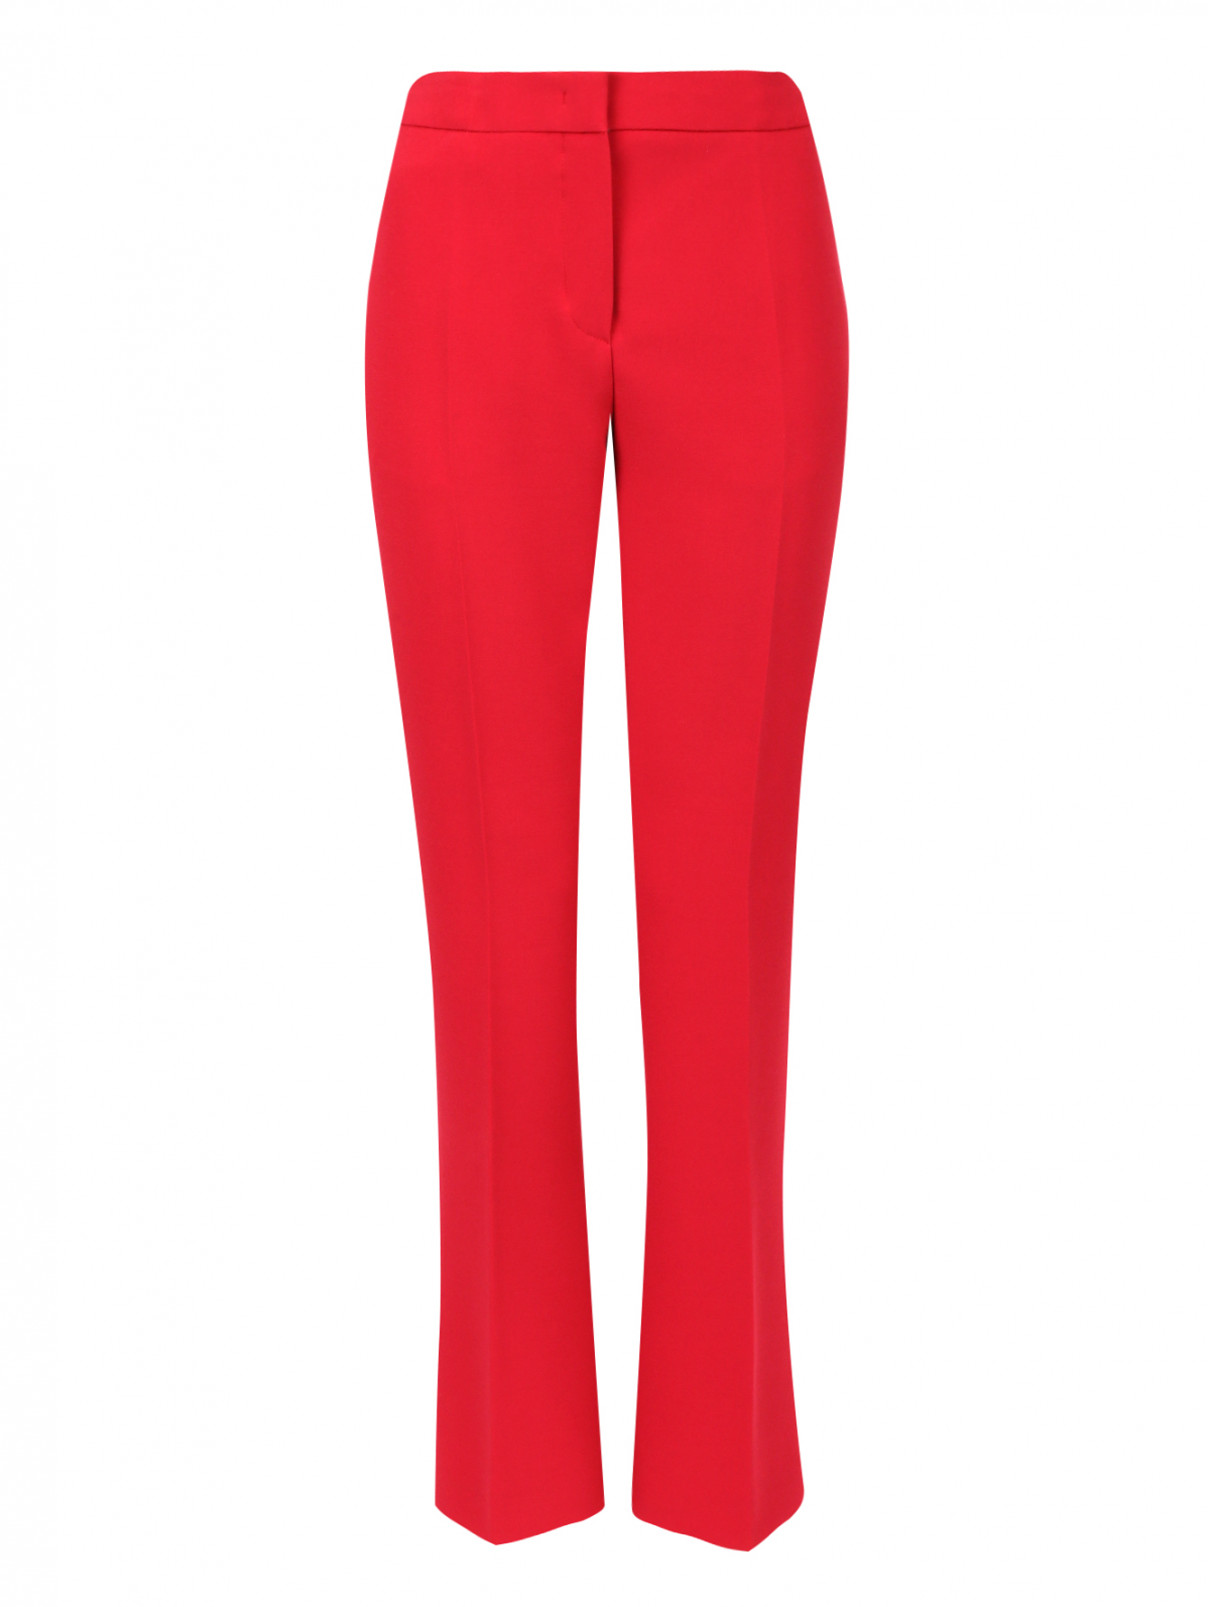 Прямые брюки со стрелками Alberta Ferretti  –  Общий вид  – Цвет:  Красный